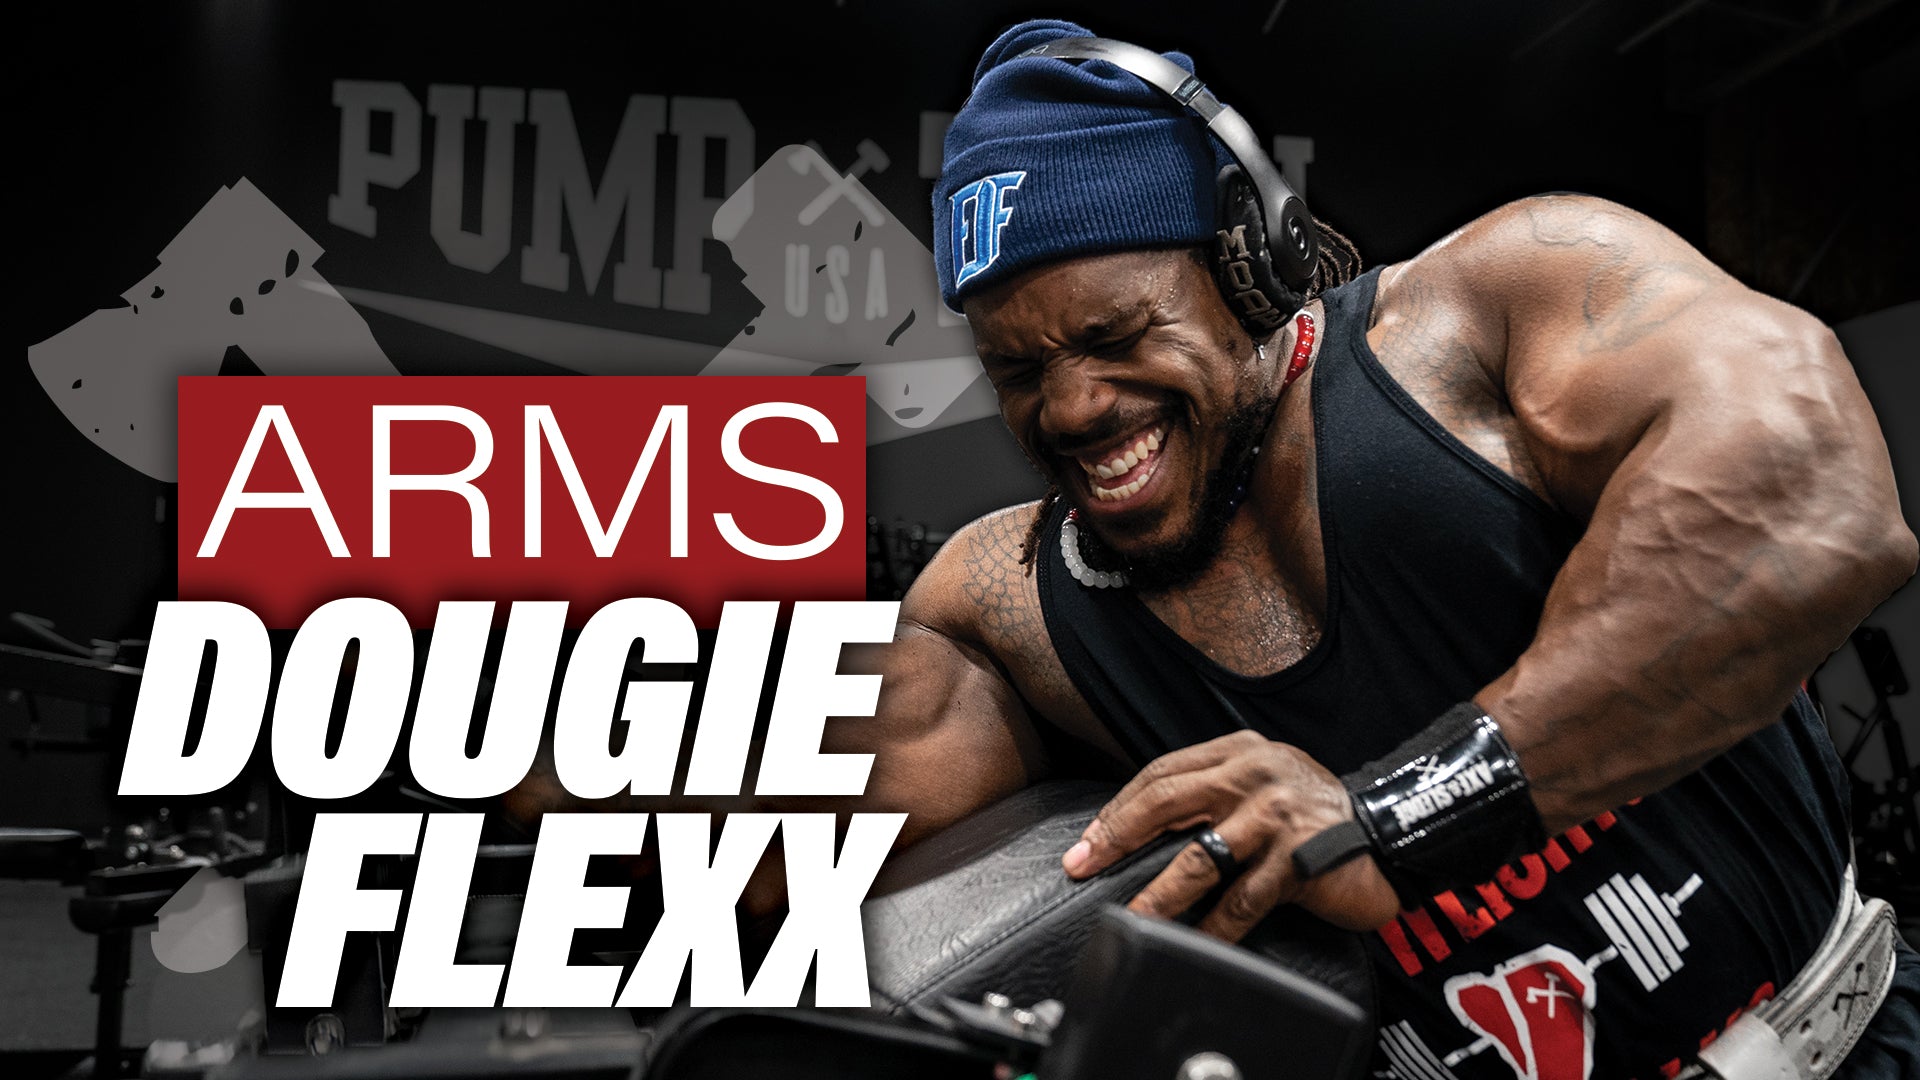 Train Arms with IFBB Pro Dougie Flexx